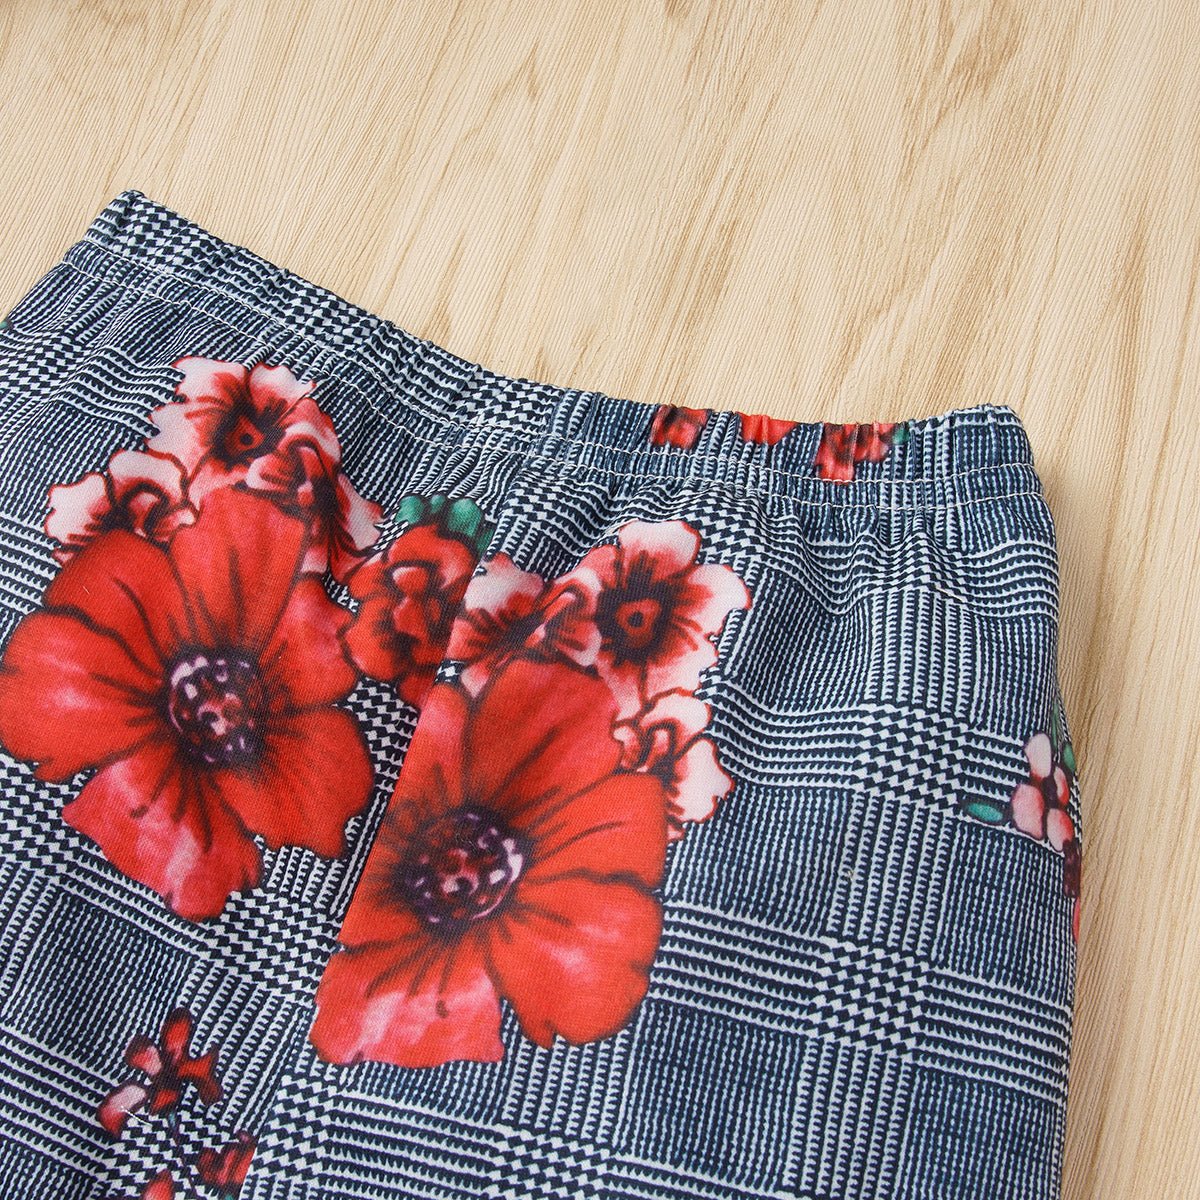 Graphic Tie Hem Top and Floral Flare Pants Set | Sugarz Chique Boutique